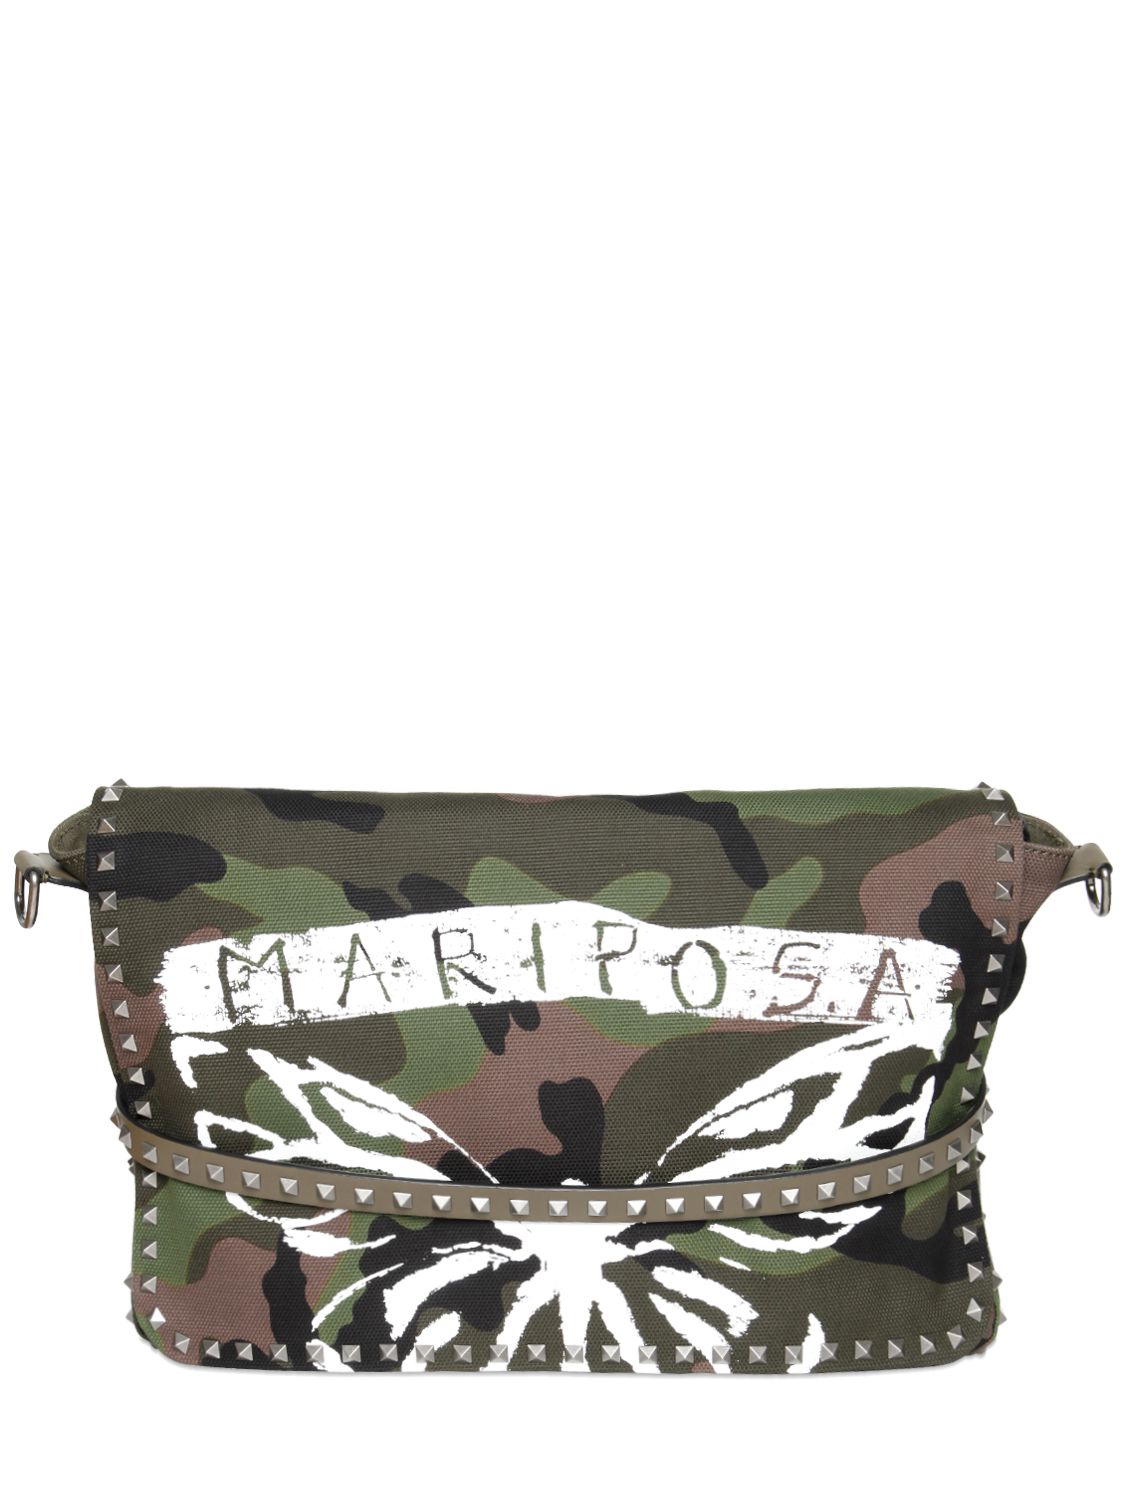 Valentino borsa "mariposa" in tela di cotone camouflage camouflage uomo borse,valentino abbigliamento trodica di morrovalle,valentino borse Vendita,Italia Vendita Outlet